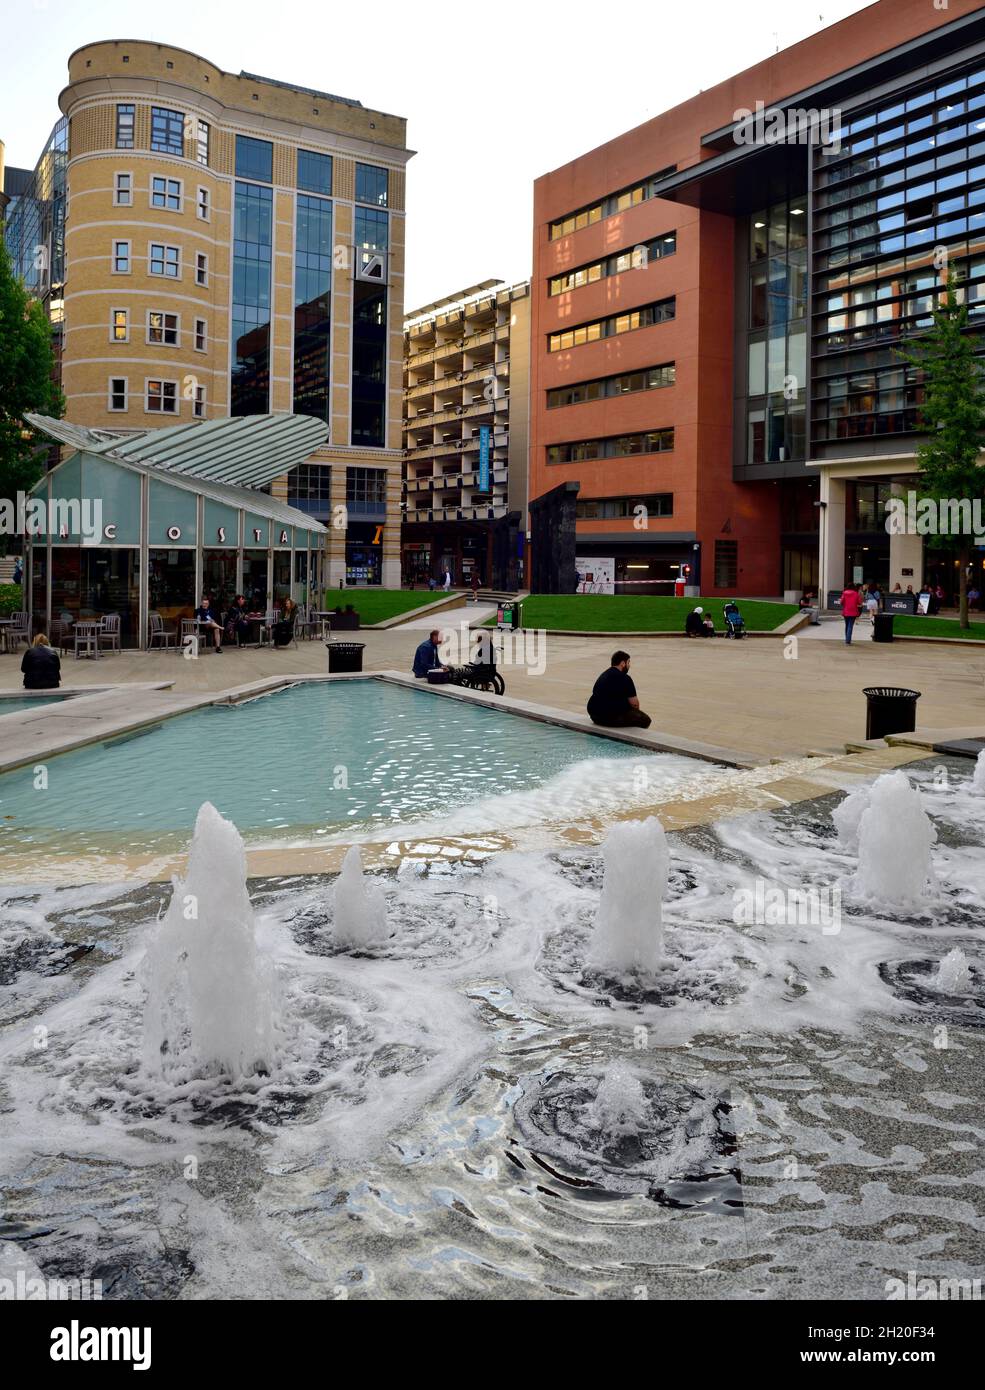 Brindley Place Fountains nel parco e la piazza pubblica, Birmingham, Regno Unito Foto Stock